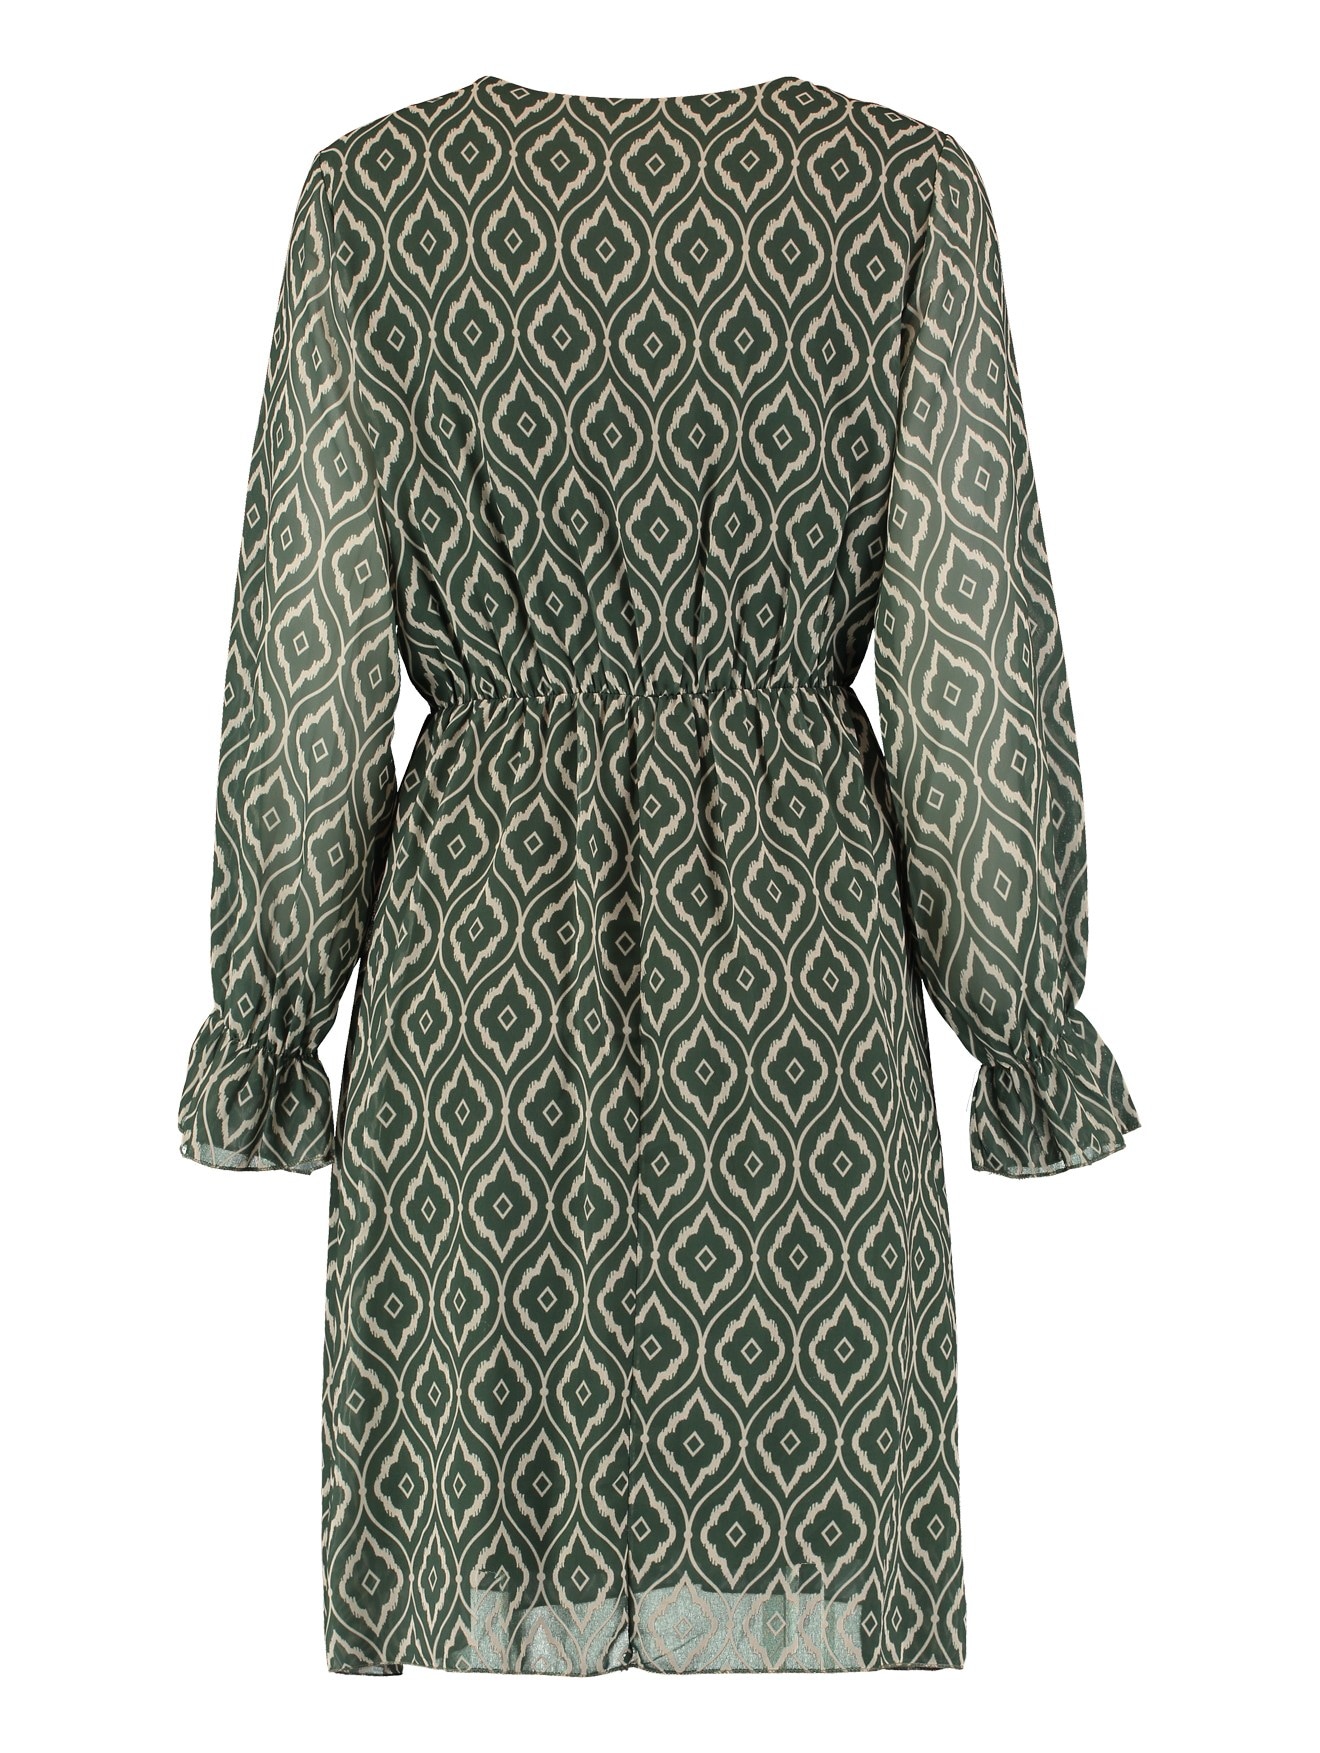 ZABAIONE Maxikleid »Dress Mo44na« bestellen im OTTO Online Shop